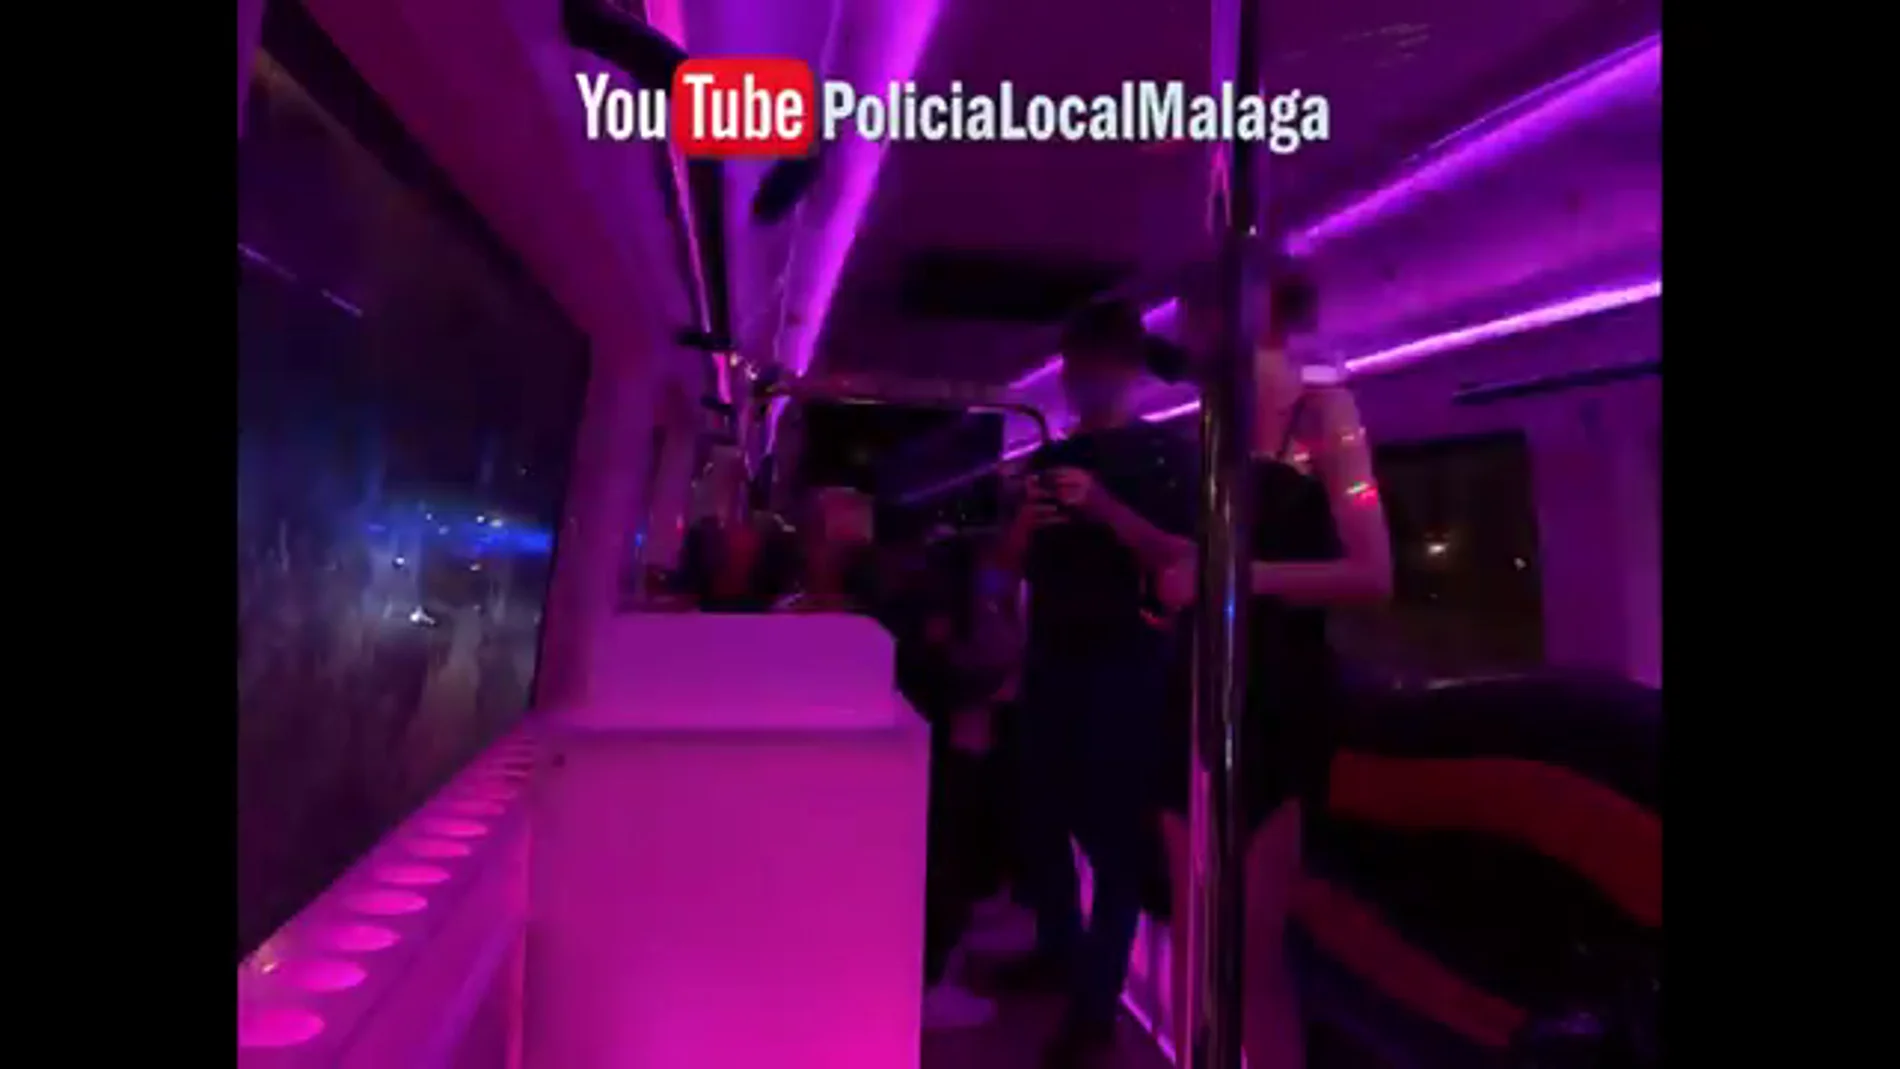 Ventiladores de humo, luces y barra, así es el autobús tuneado como discoteca en Málaga que burlaba las normas COVID